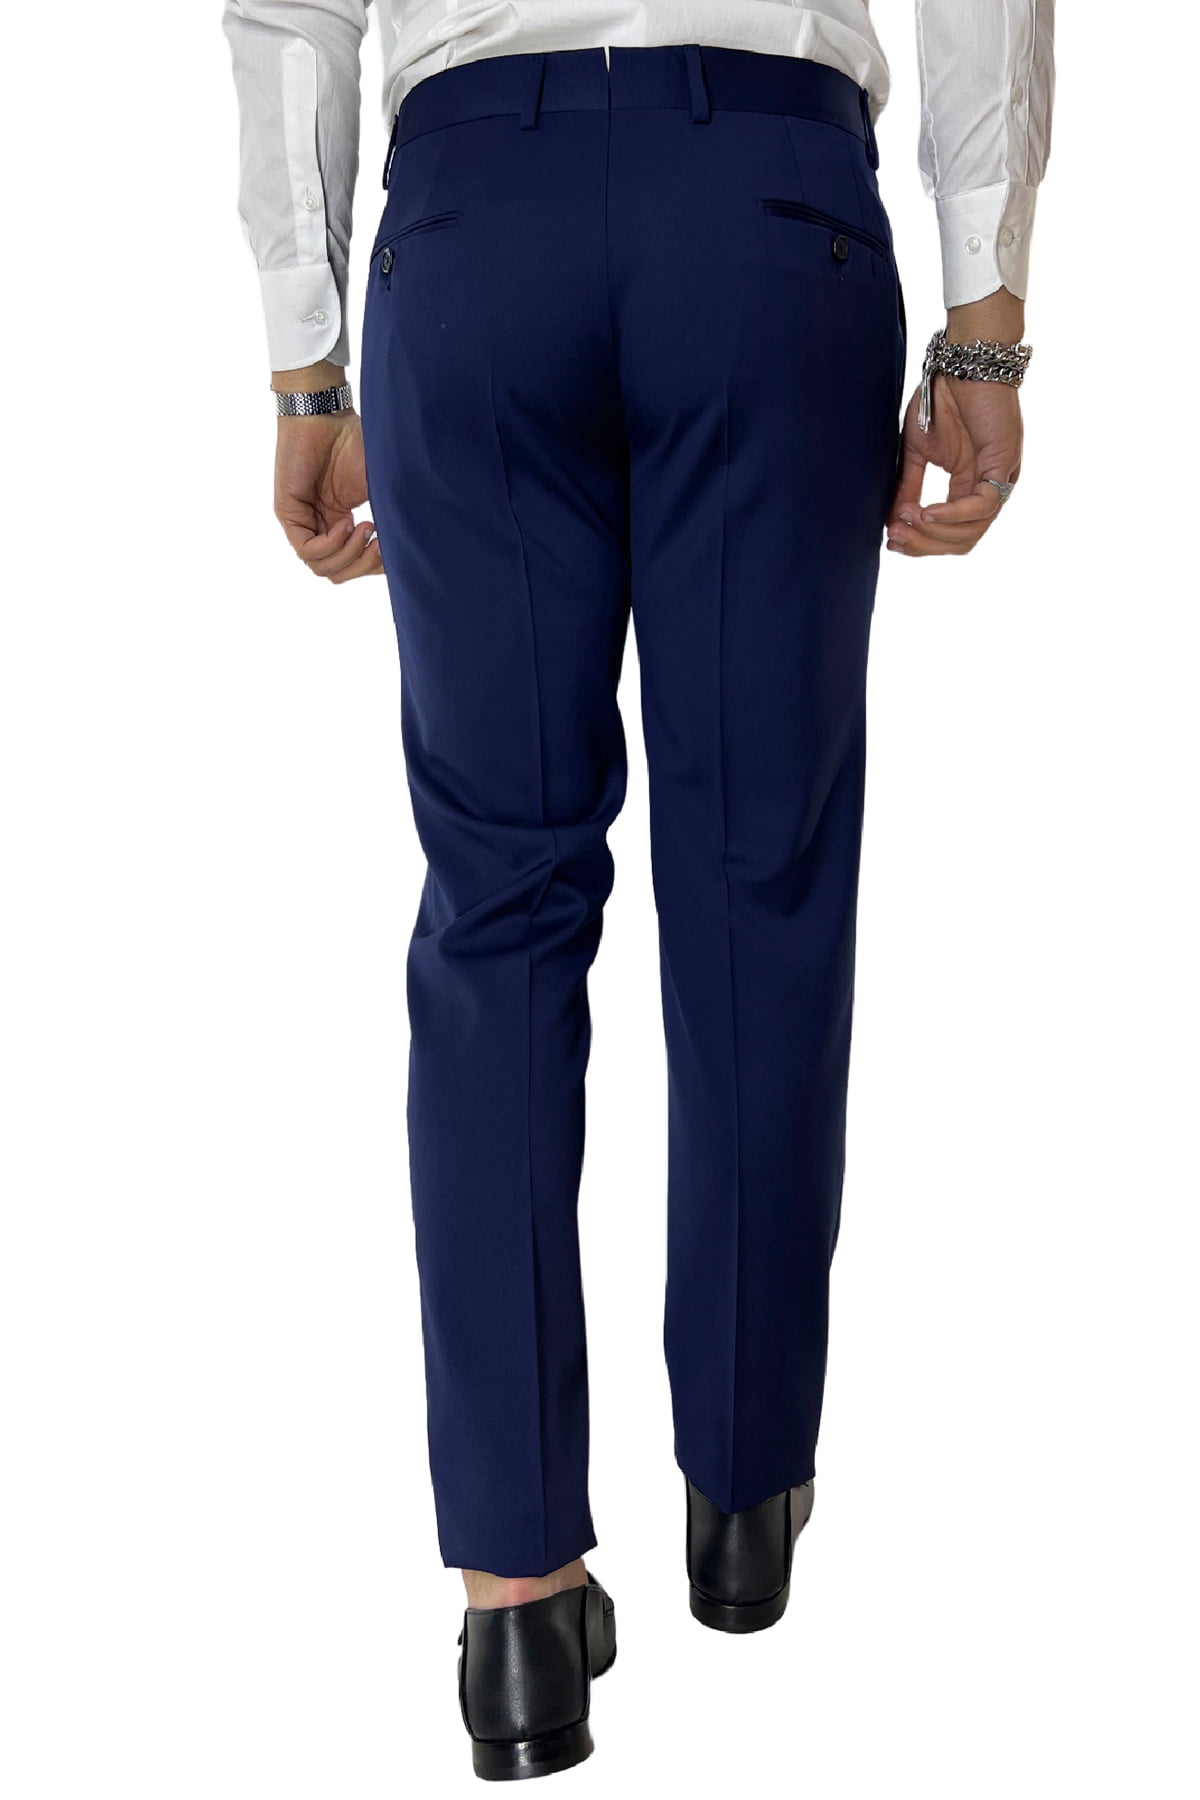 Smoking uomo blu royal giacca con rever sciallato e pantalone tasca america in fresco lana 100% Vitale Barberis Canonico